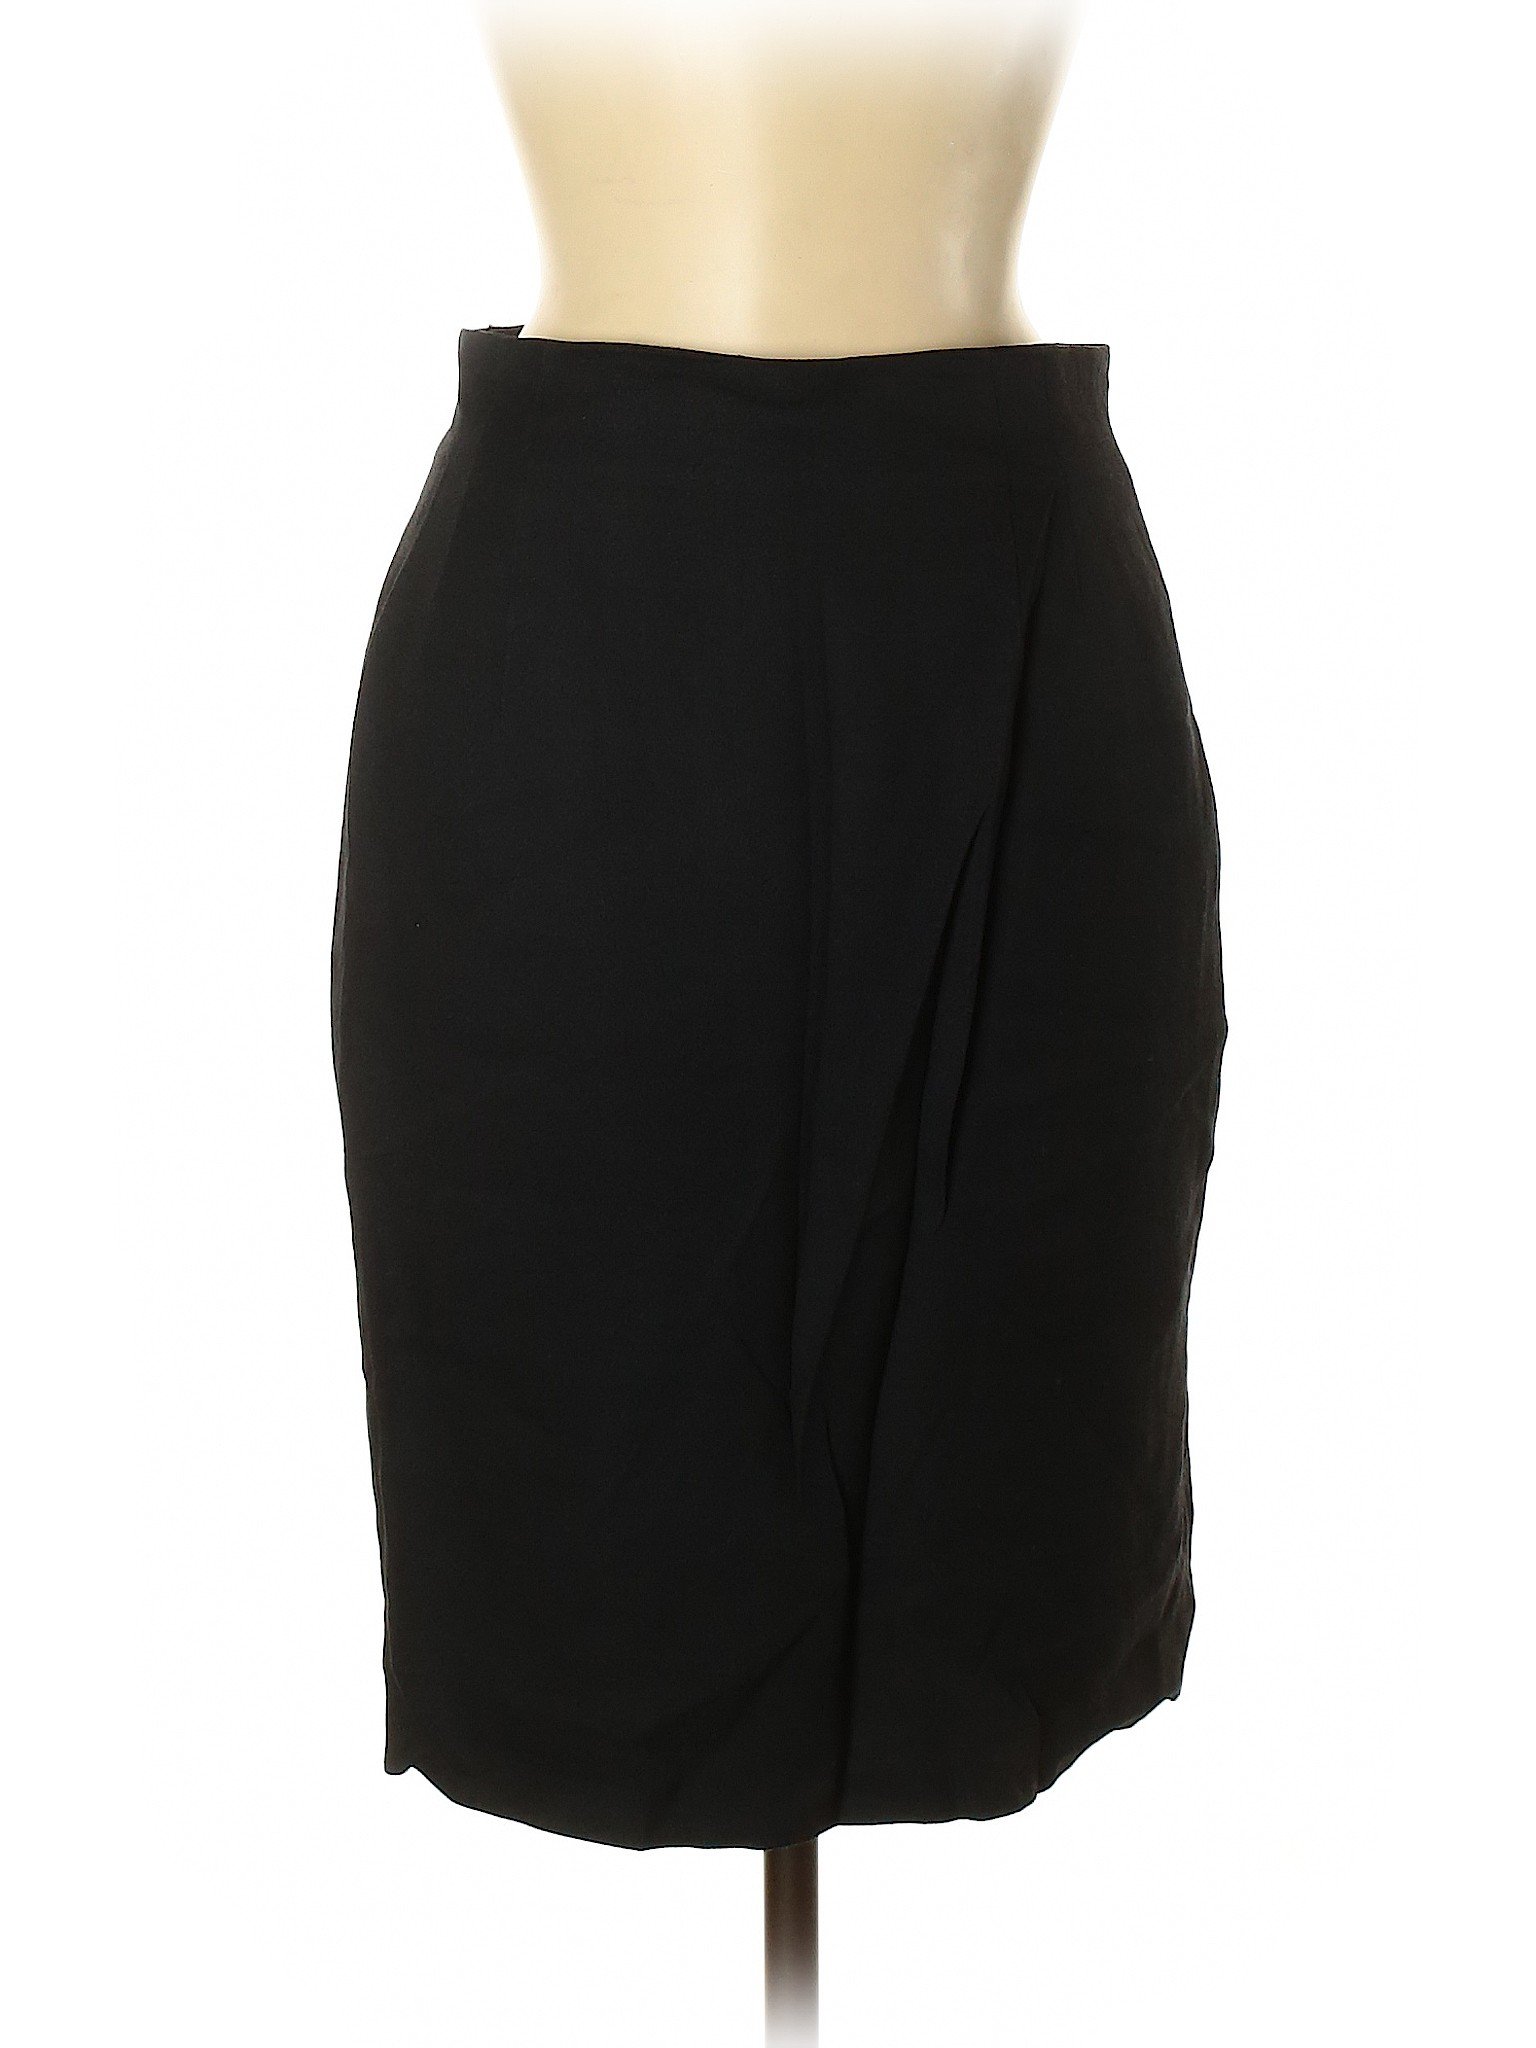 Jones New York Women Black Casual Skirt 8 | eBay